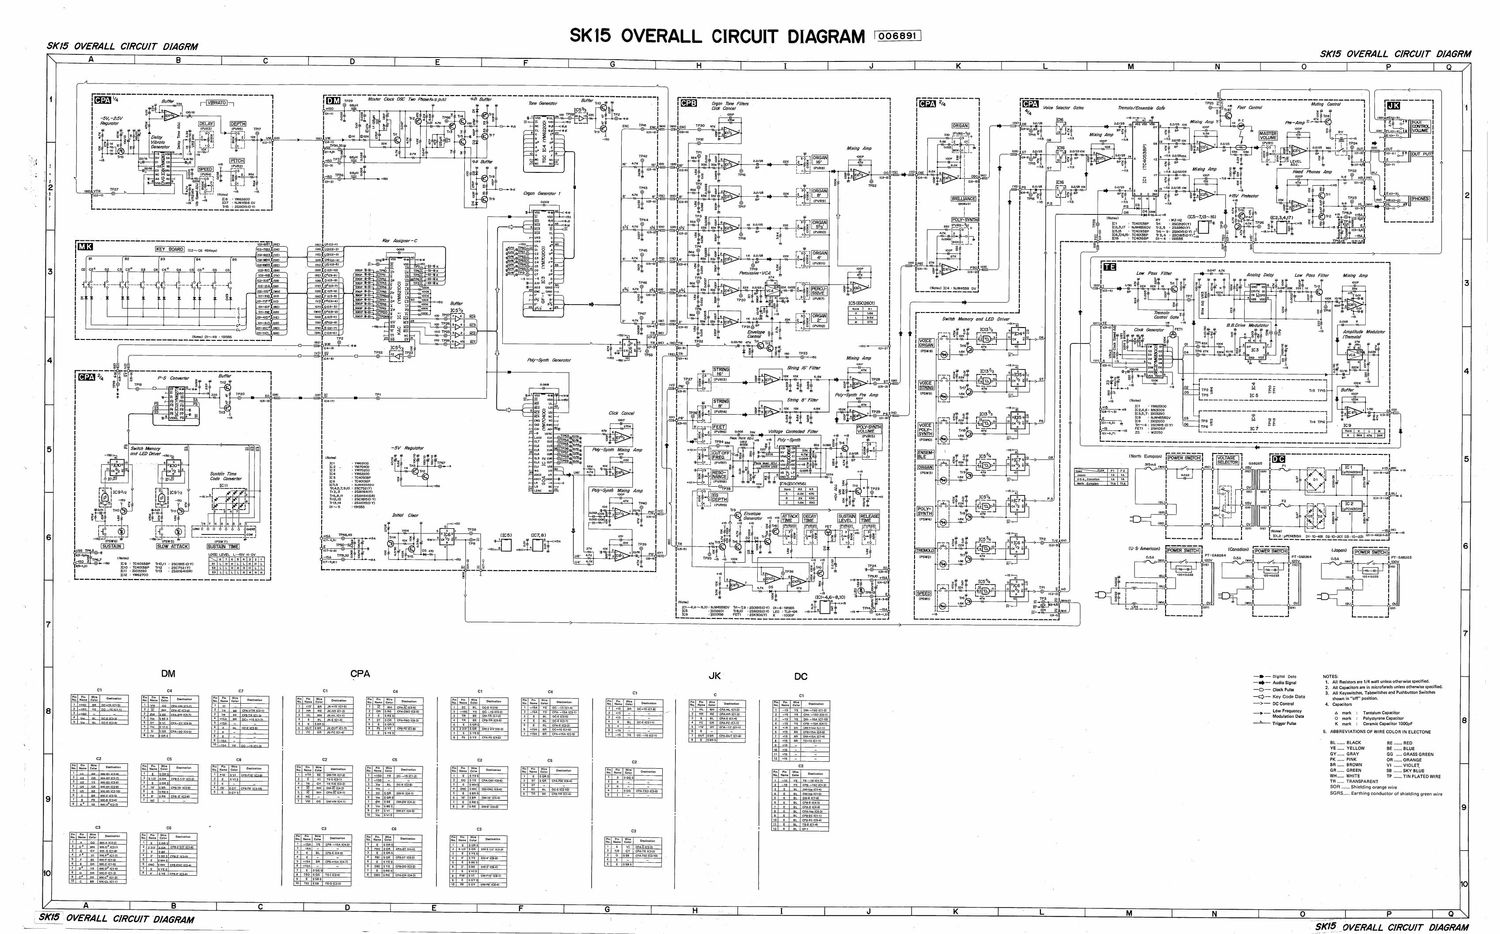 Yamaha SK 15 Overall Circuit Diagram